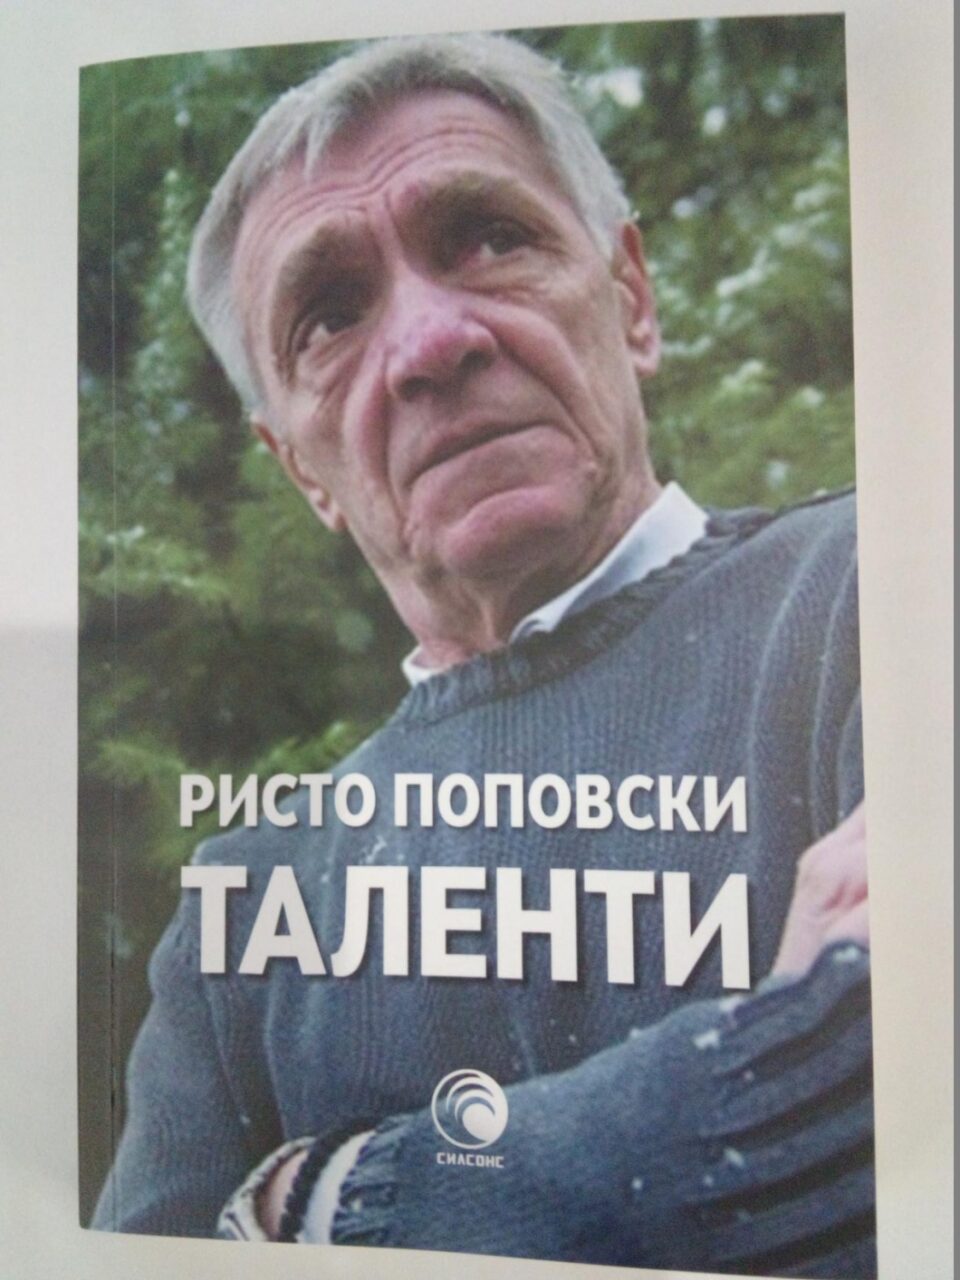 Објавена книгата „Таленти“, колумни од новинарот Ристо Поповски